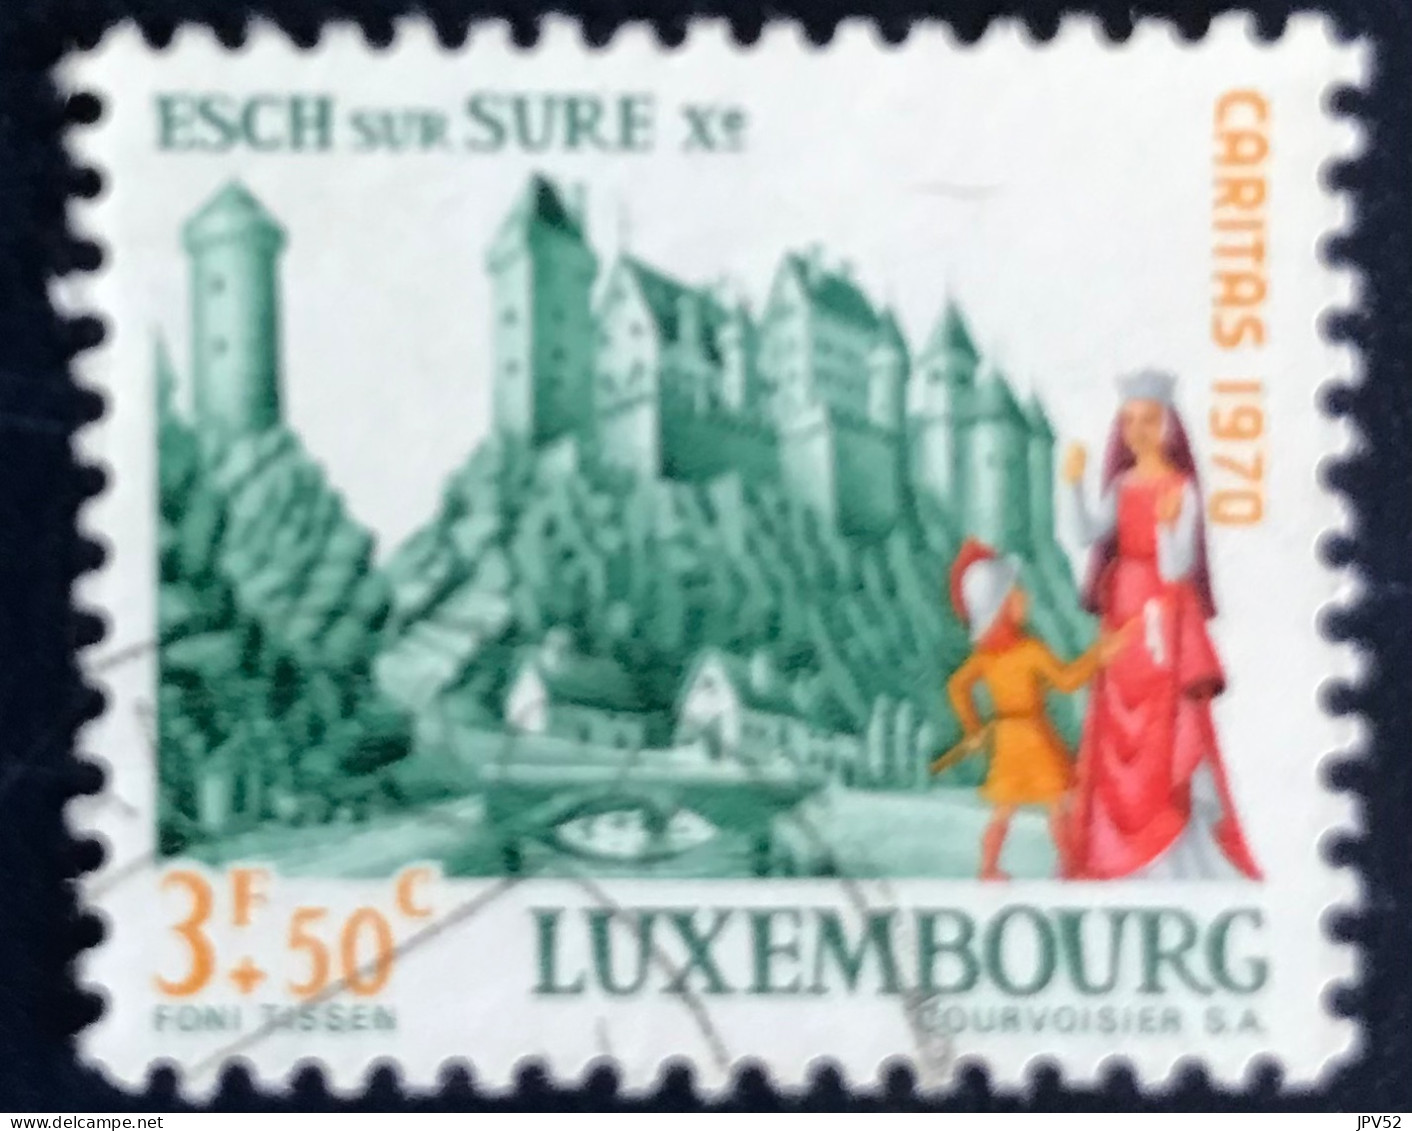 Luxembourg - Luxemburg - C18/34 - 1970 - (°)used - Michel 817 - Kasteel Esch-sur-Süre - Gebruikt